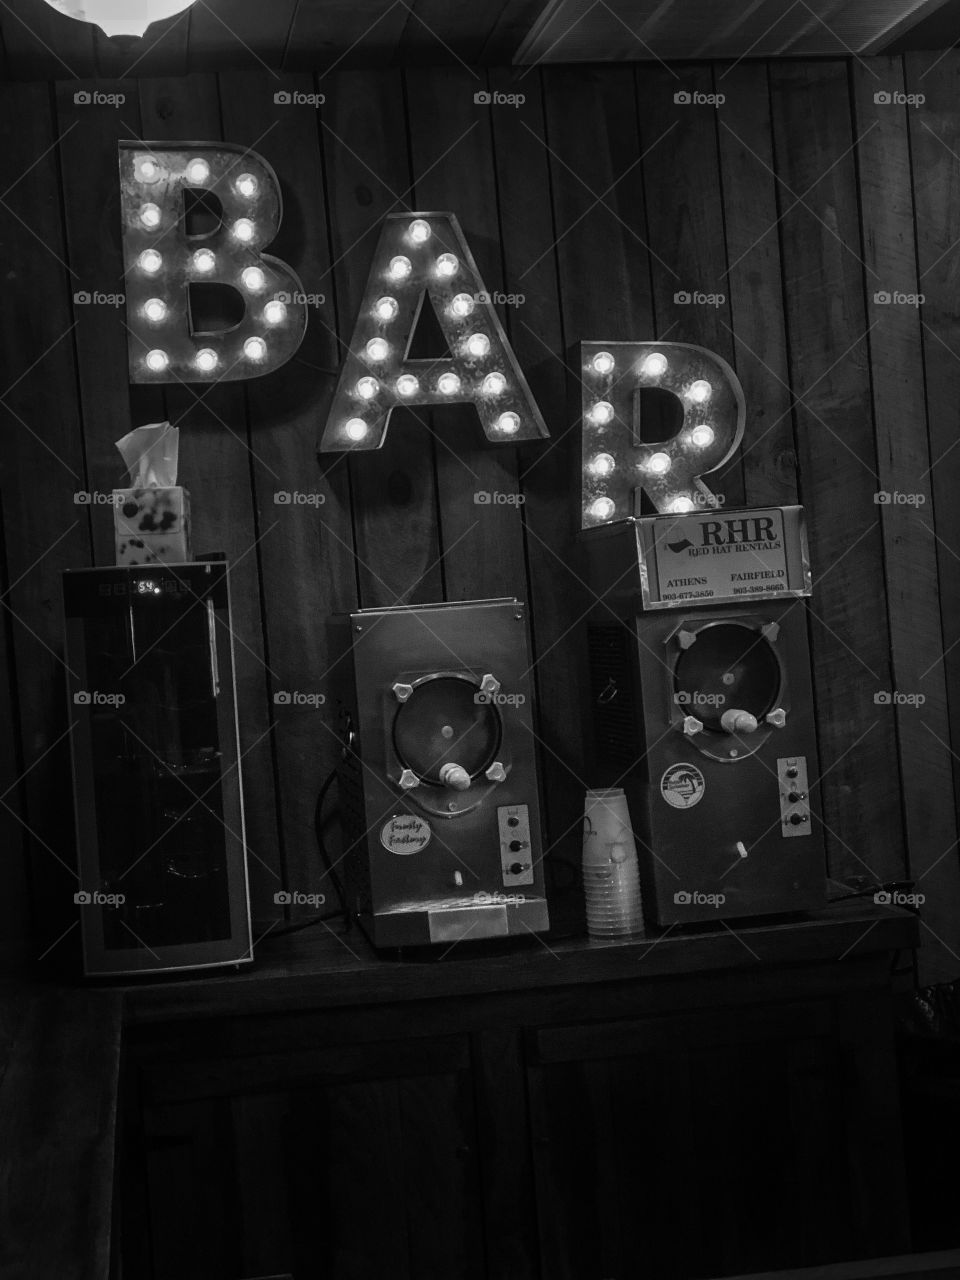 Just A Bar